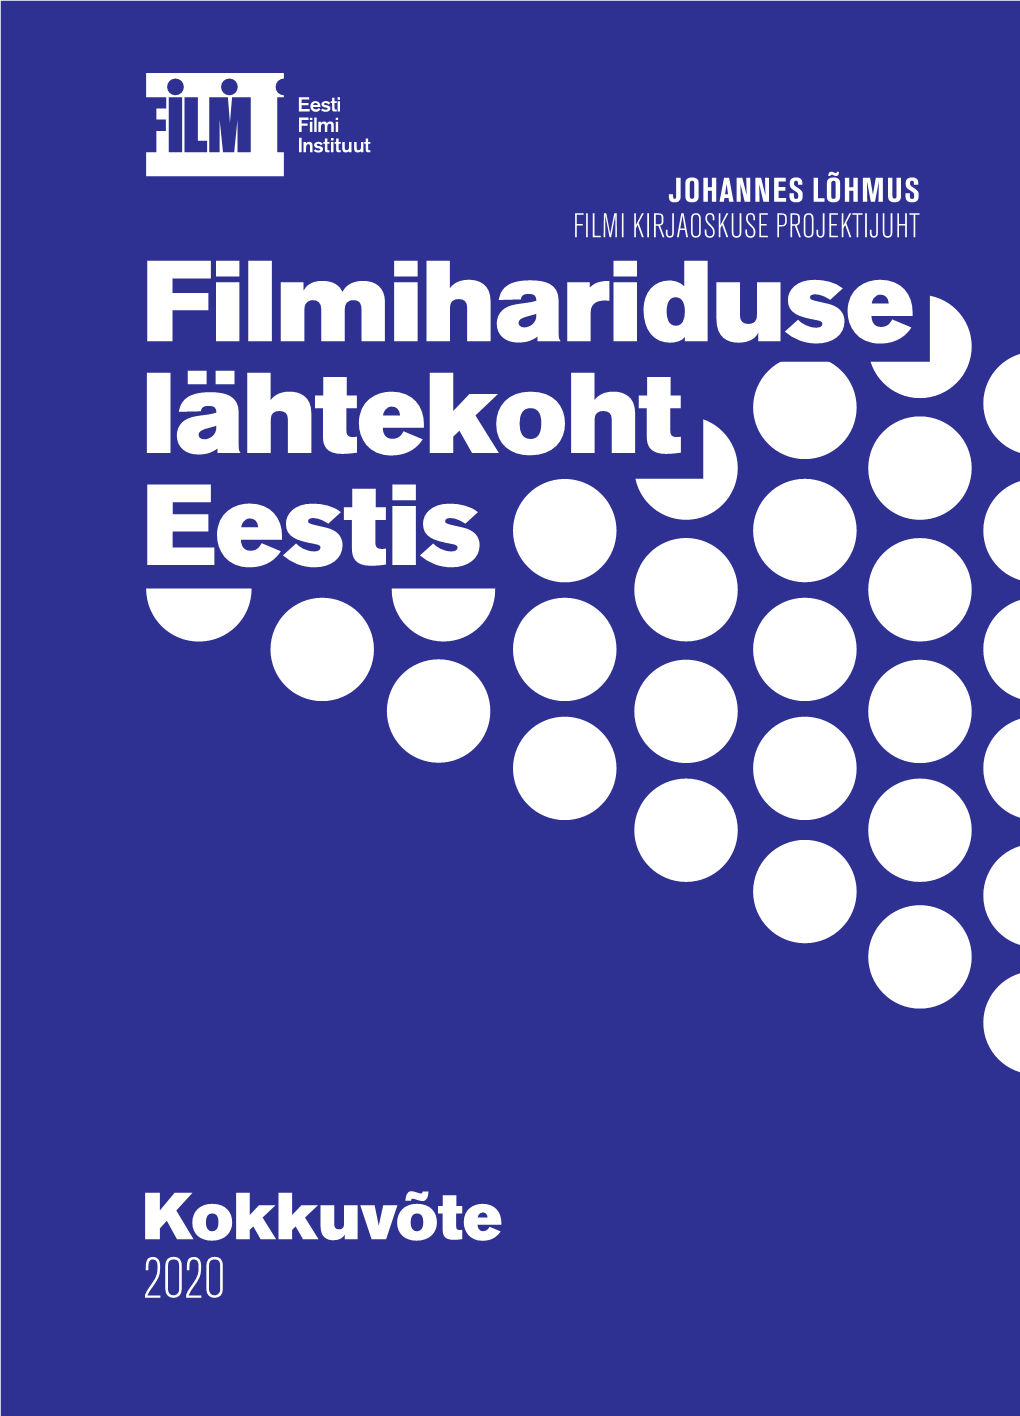 Filmihariduse Lähtekoht Eestis 01 Sissejuhatus